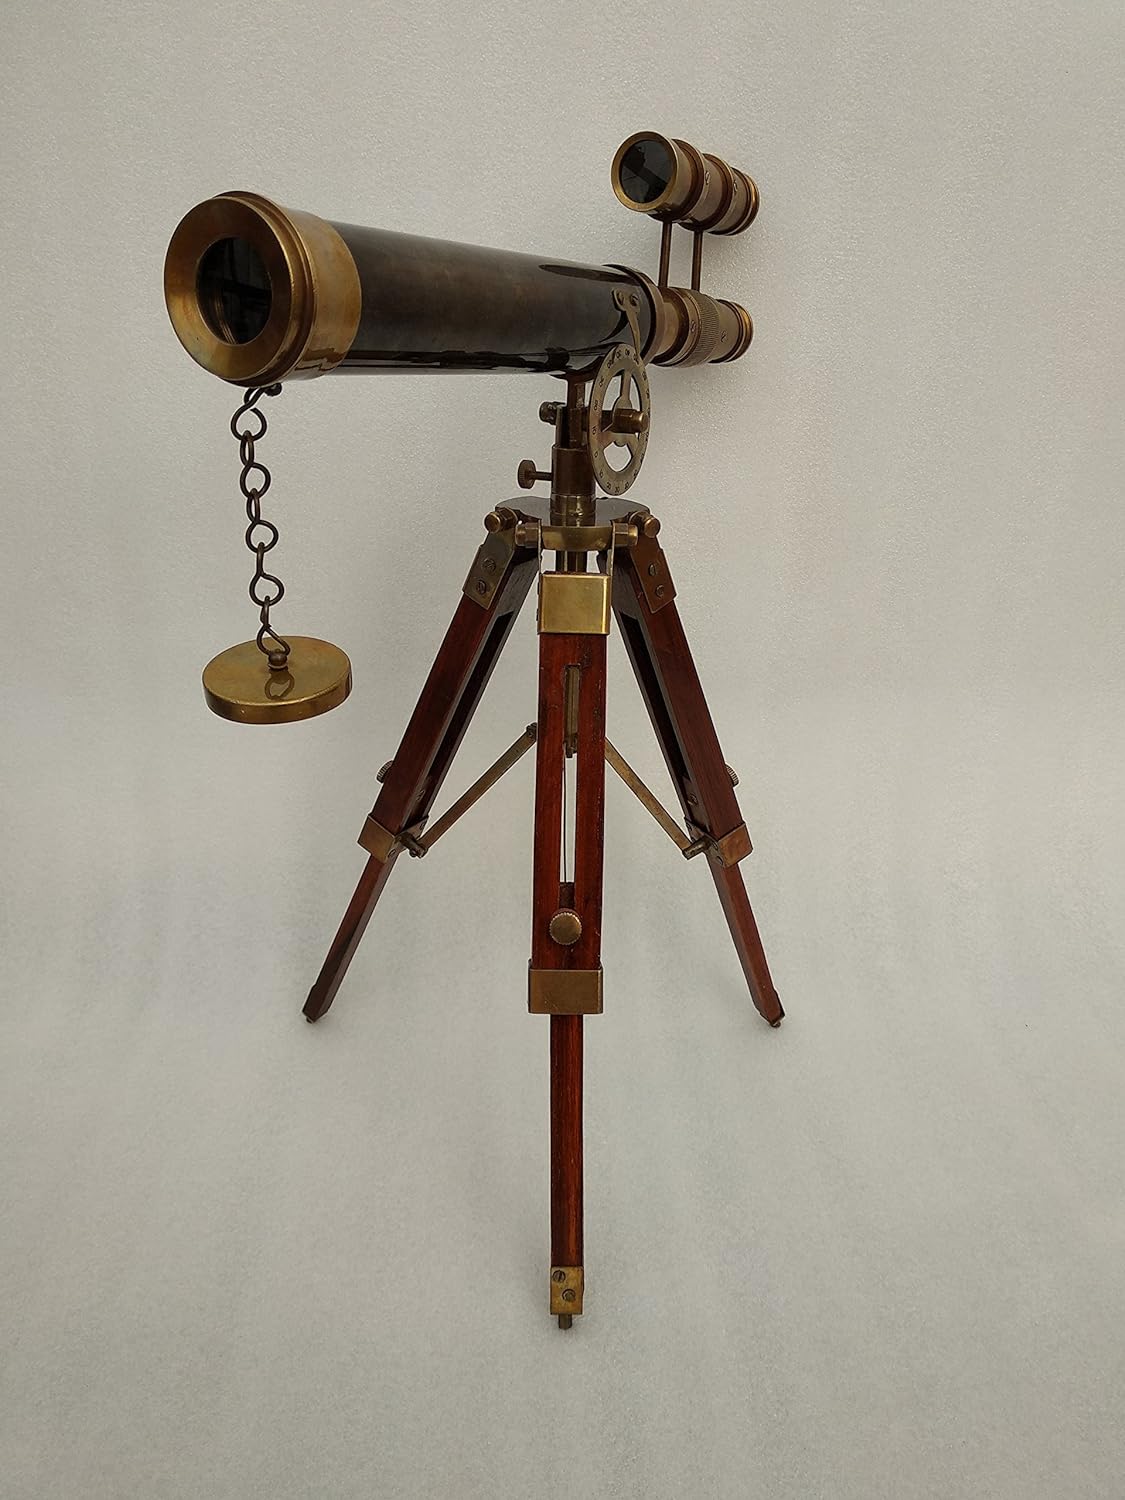 Doble Barel Victoriano Londres (1915) Telescopio de latón 14" en tripode